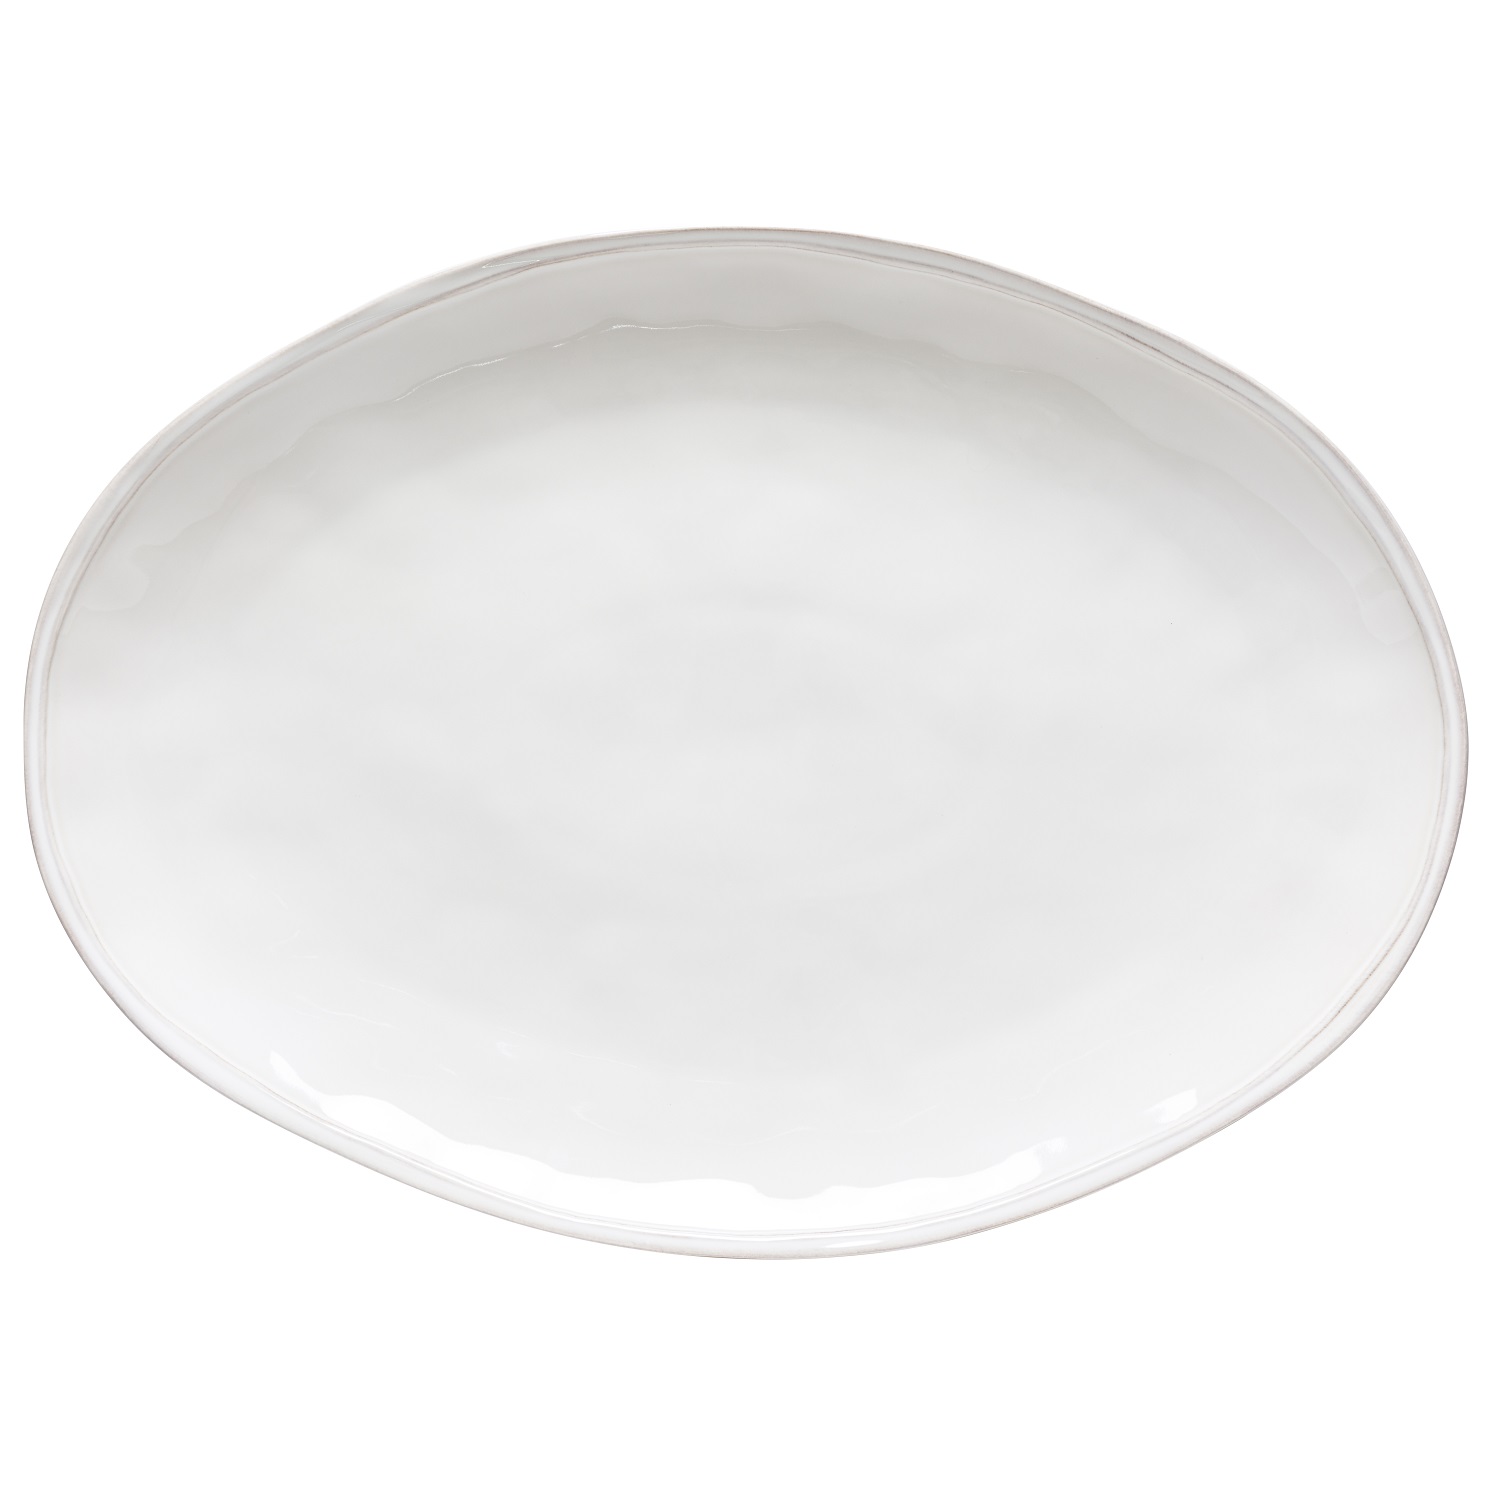 Fontana White Oval/turkey Platter 56cm Gift